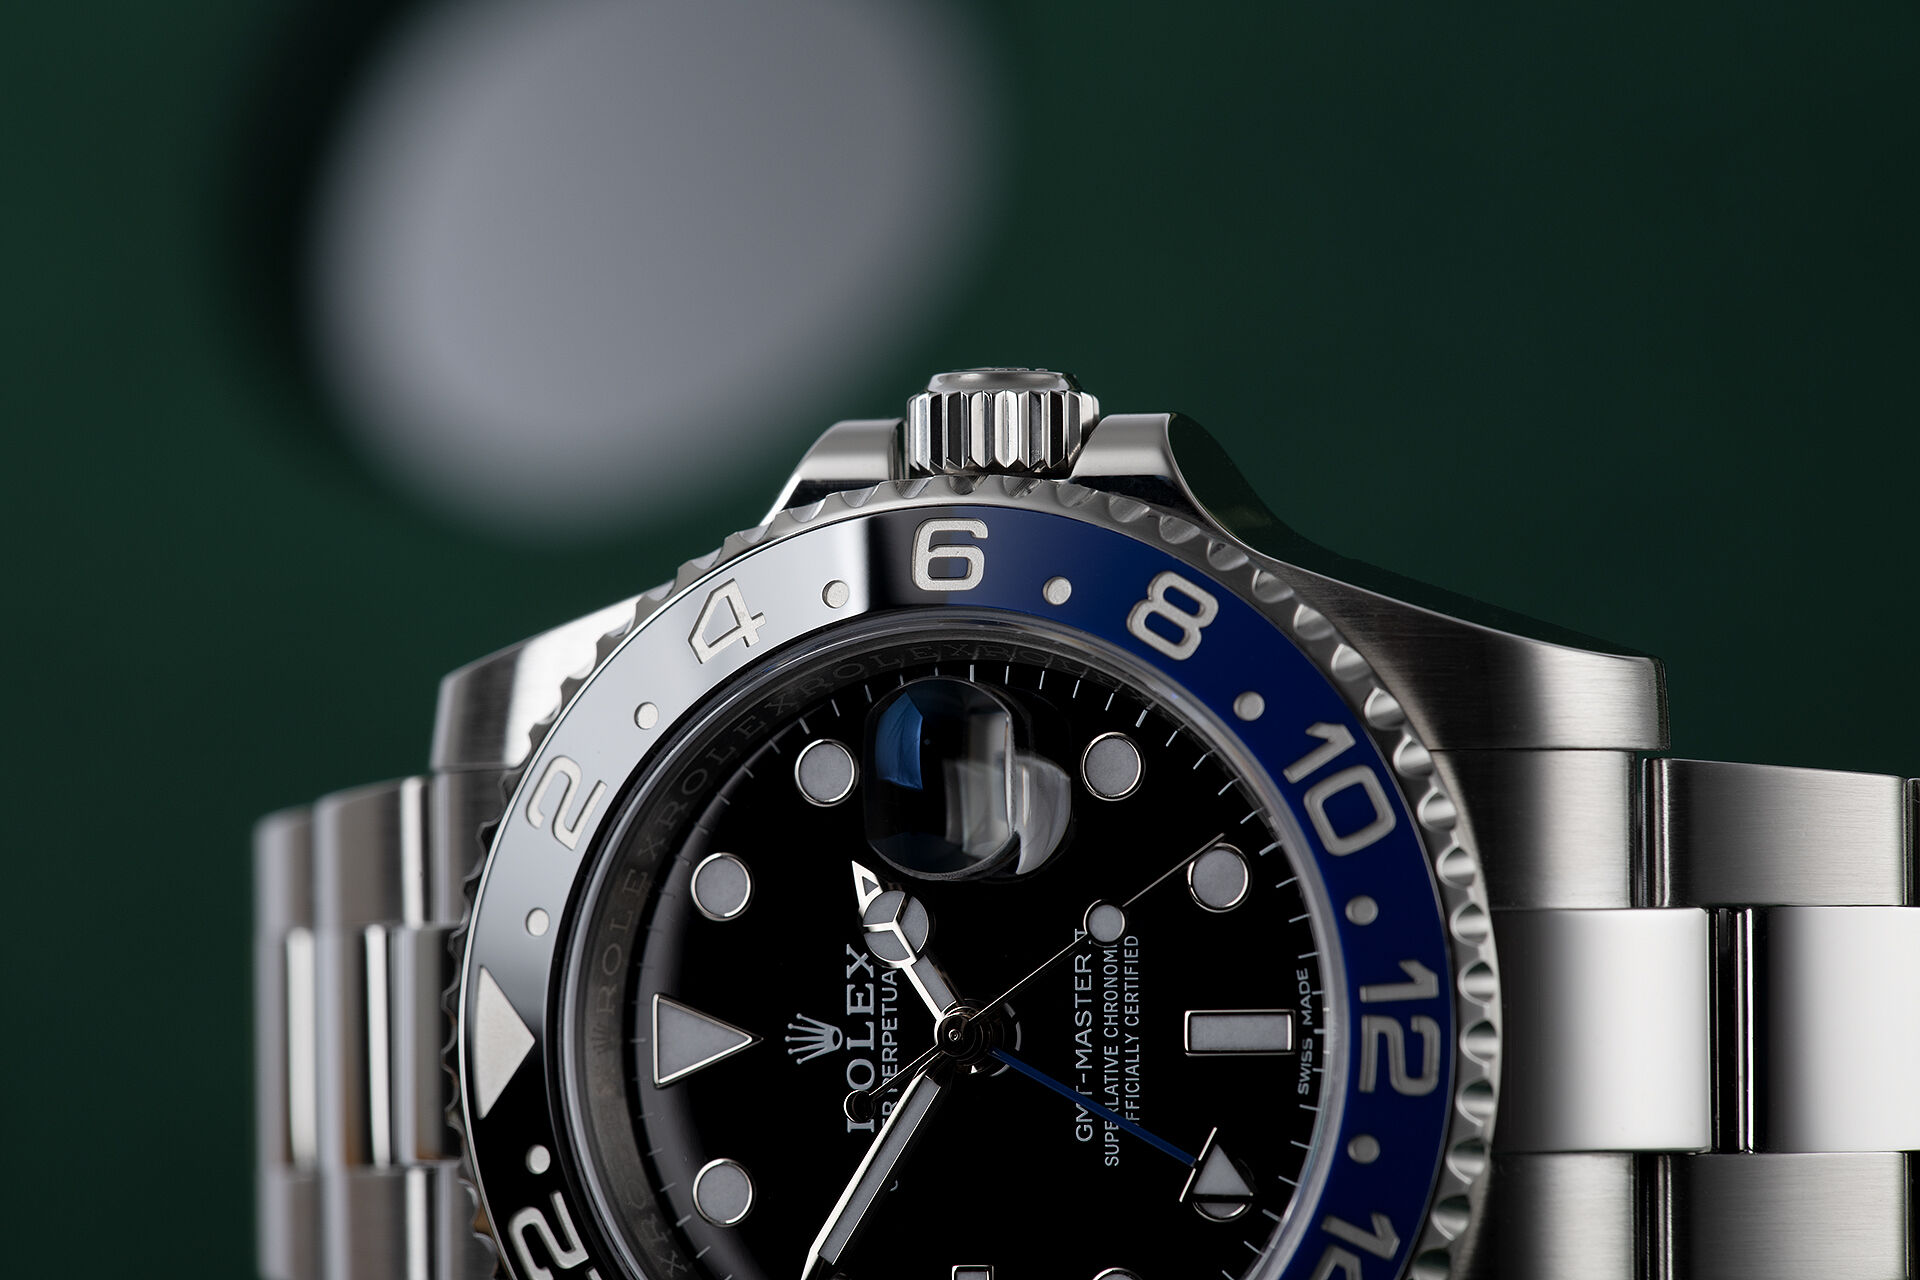 ref 116710BLNR | Rolex Warranty to 2023 | Rolex GMT-Master II